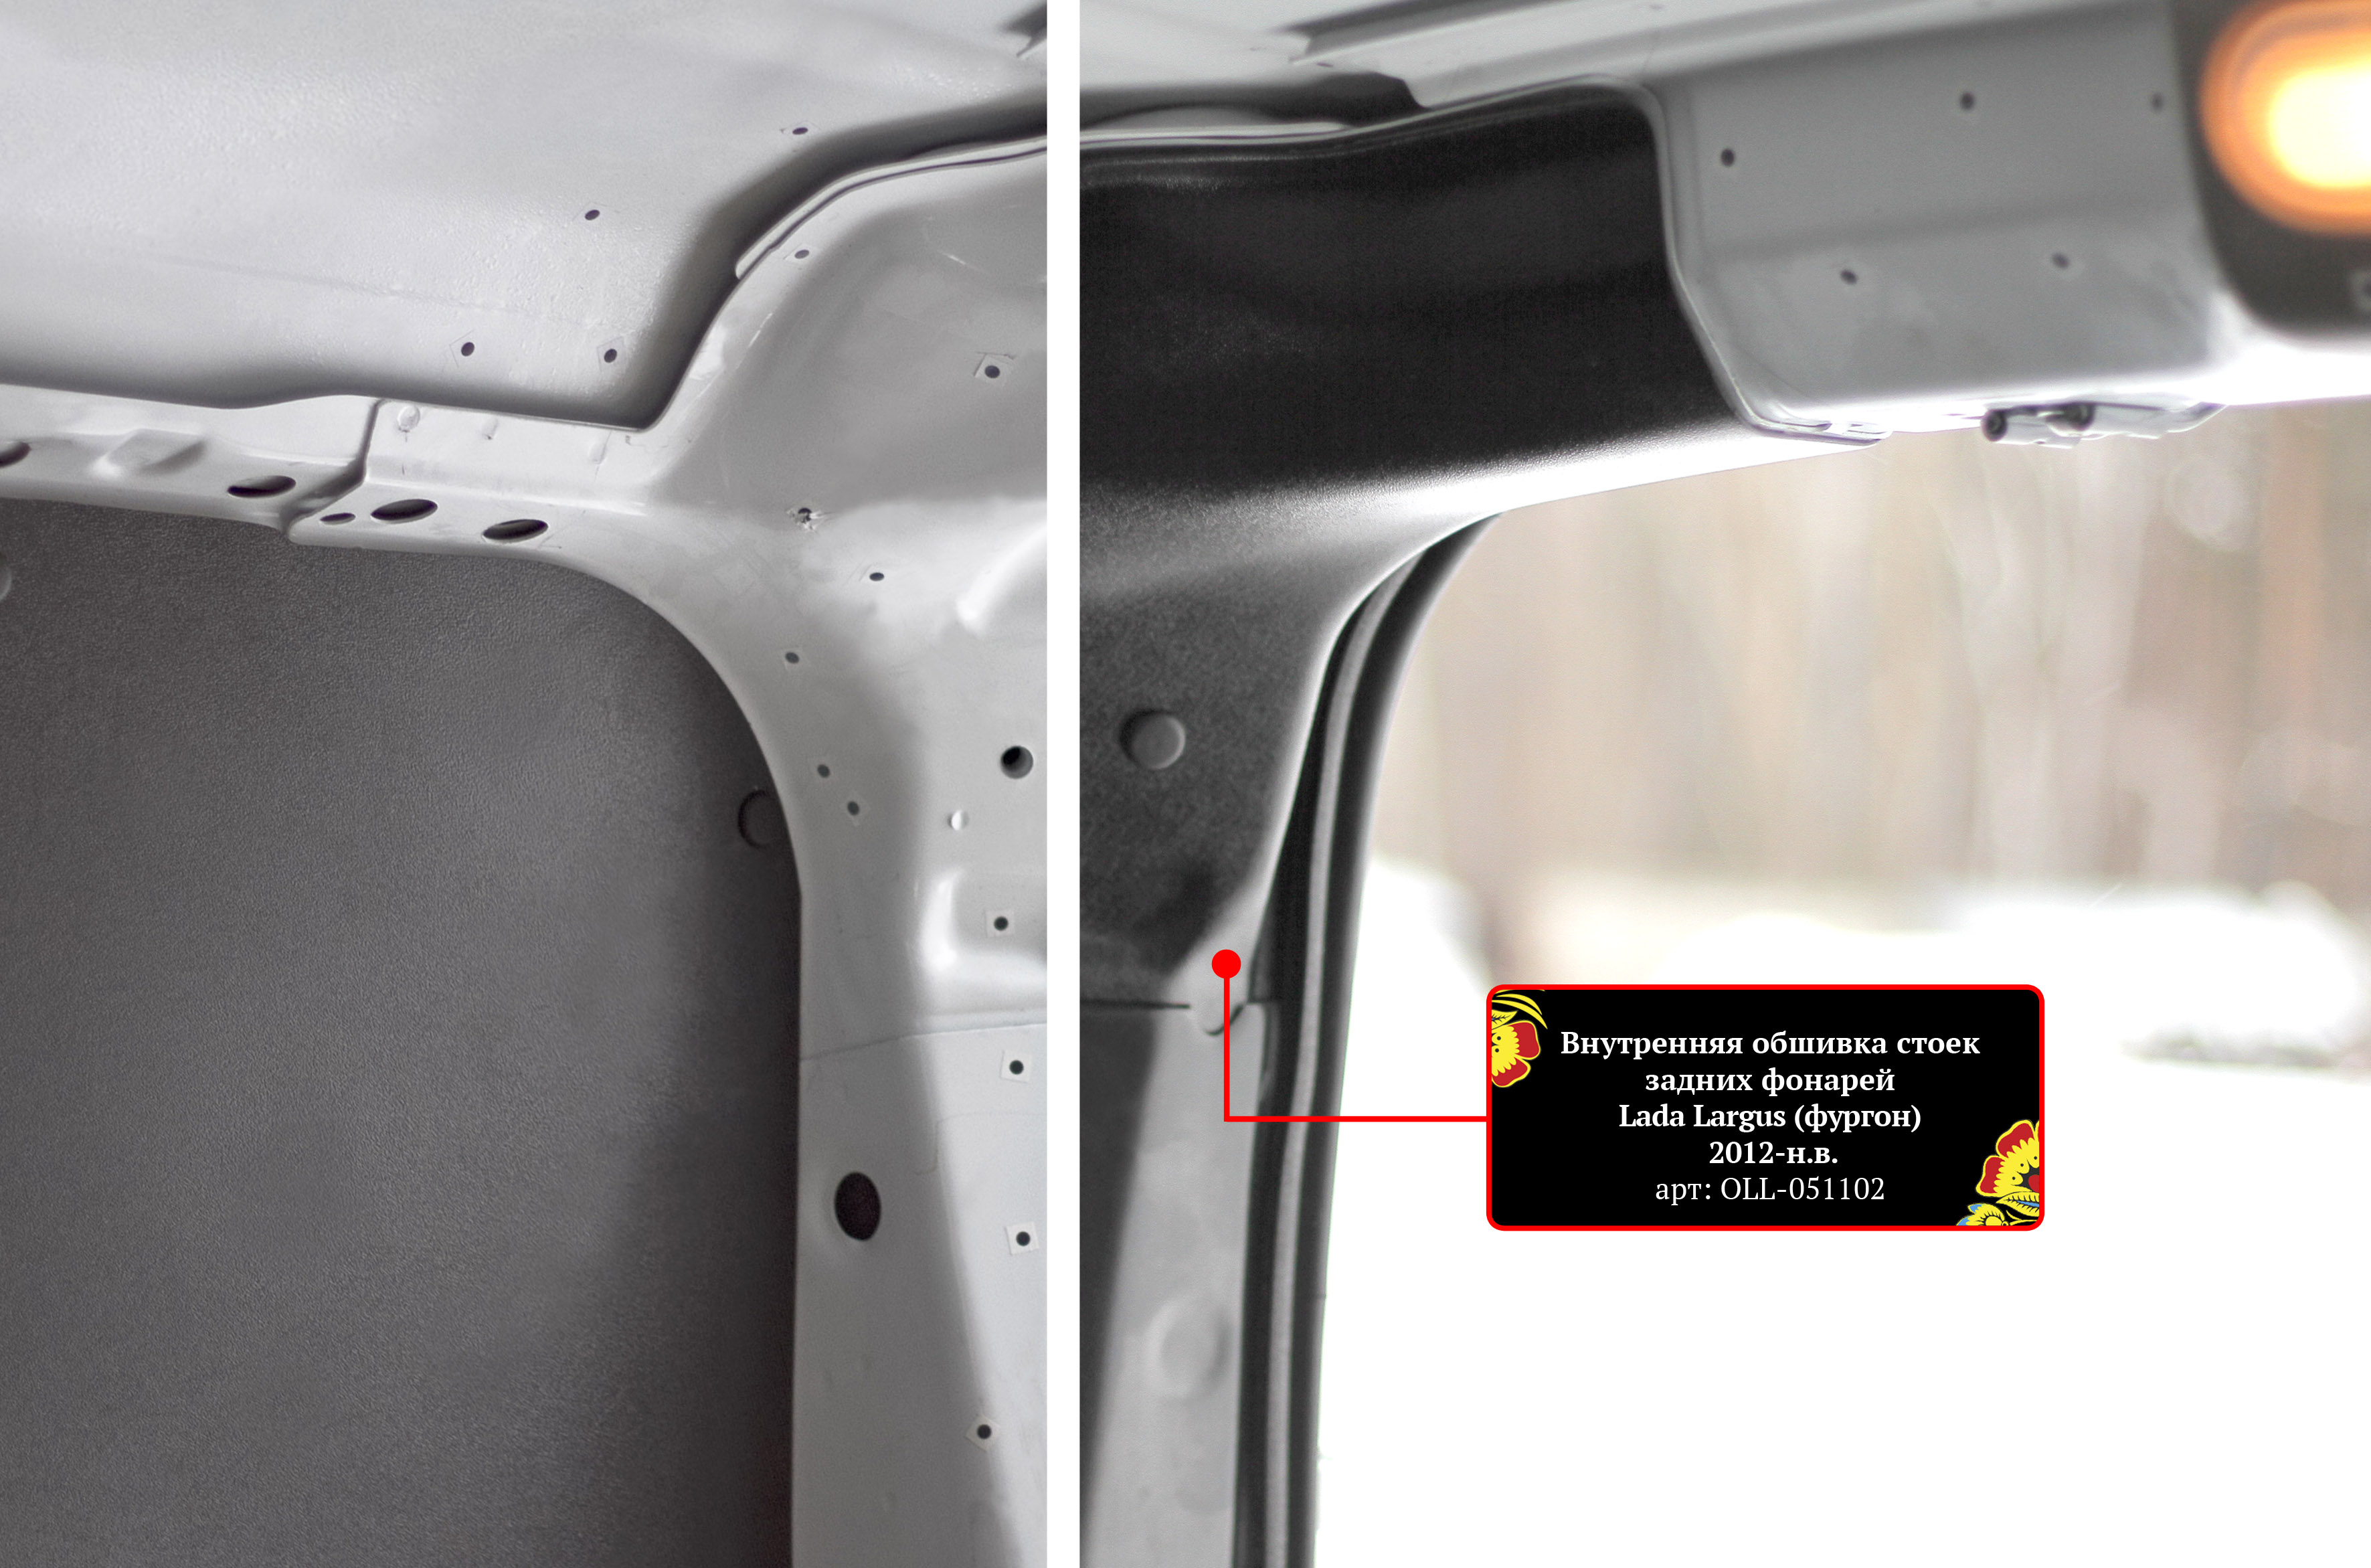 Внутренняя обшивка стоек задних фонарей (со скотчем 3М) для LADA Largus (фургон) 2012-н.в., шагрень